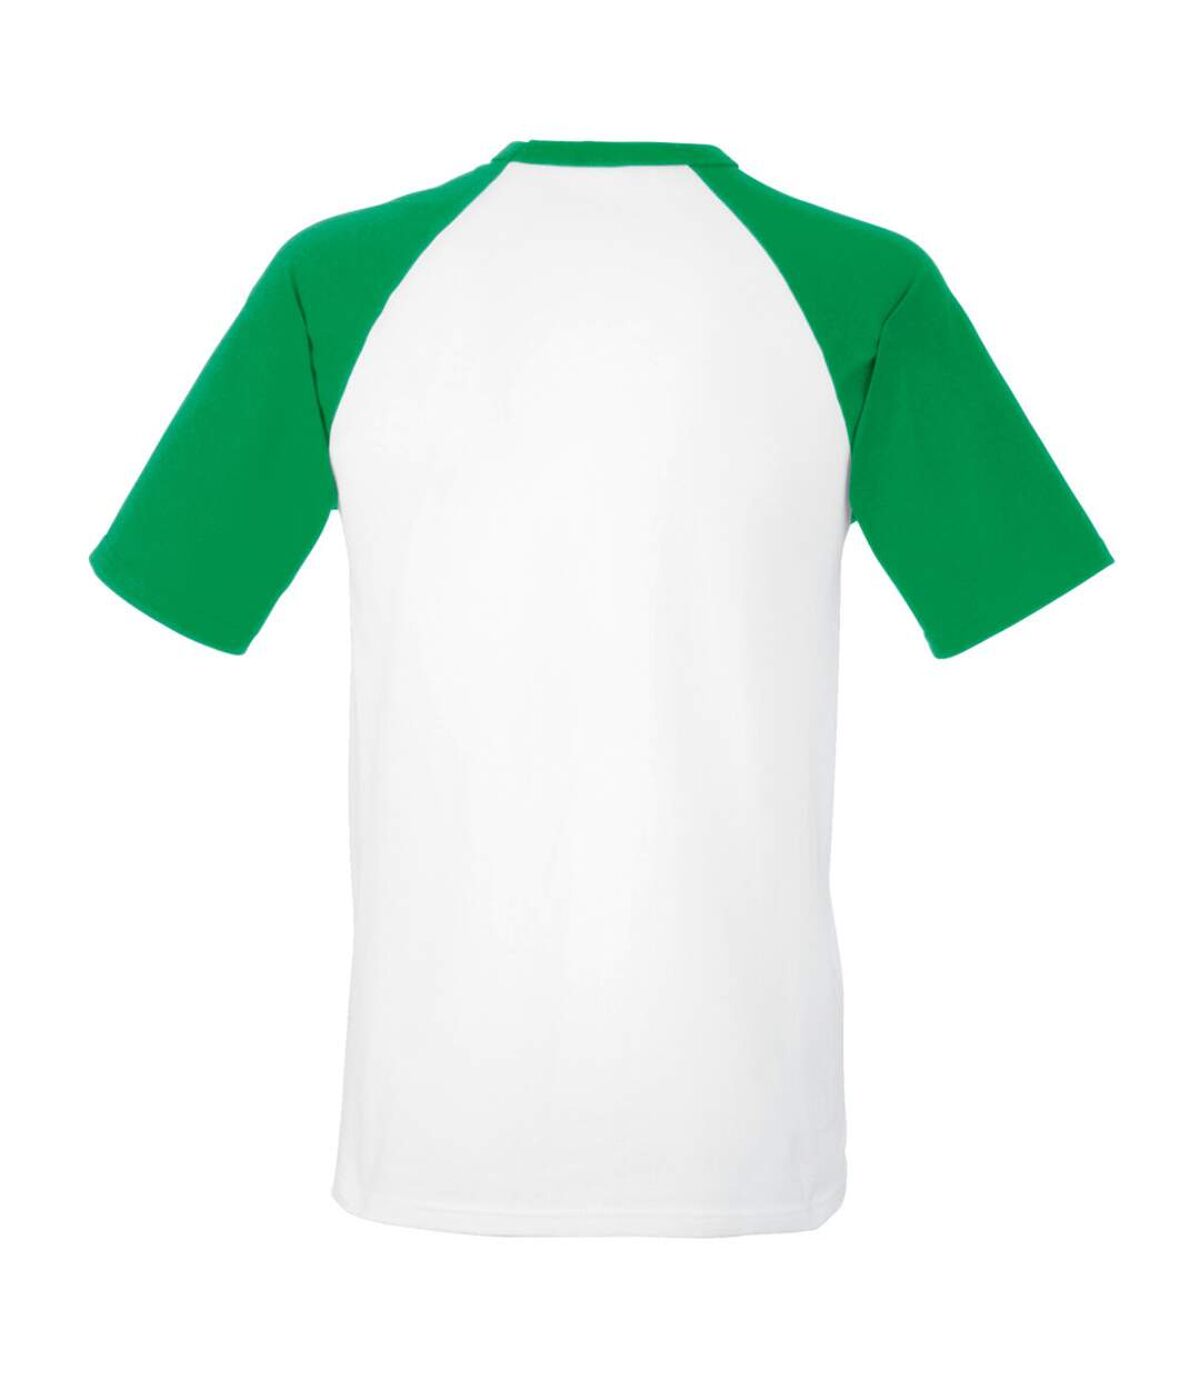 Fruit Of The Loom Mens Short Sleeve Baseball T-Shirt (White/Kelly Green) - UTBC327